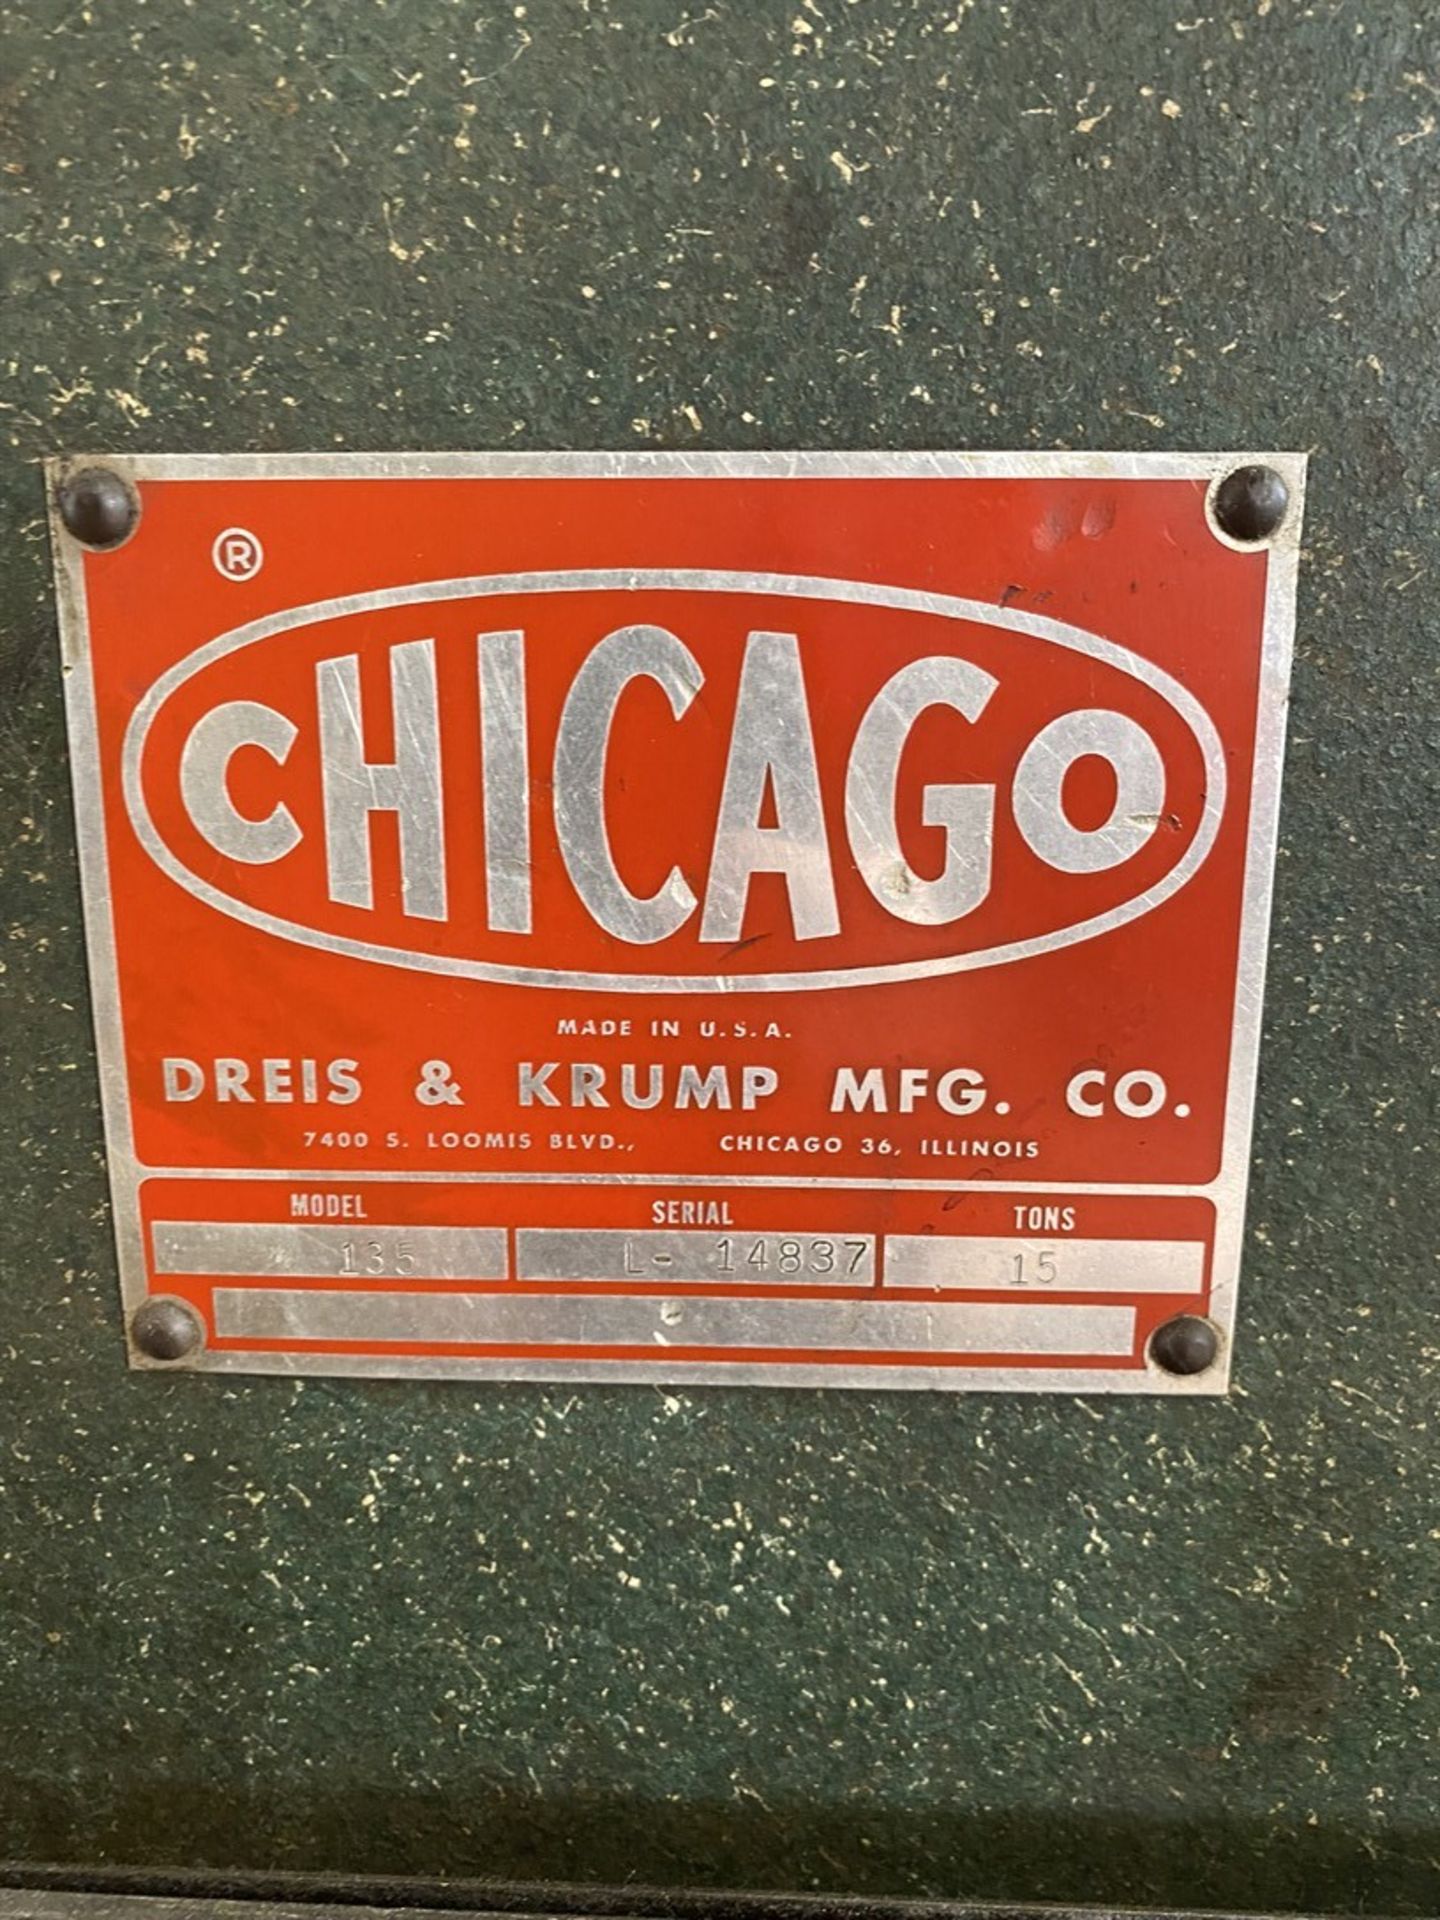 CHICAGO DREIS & KRUMP Press Brake, s/n L14837, 15 Ton Capacity, 4’ Bed Length, 31” Between Housings - Image 2 of 4